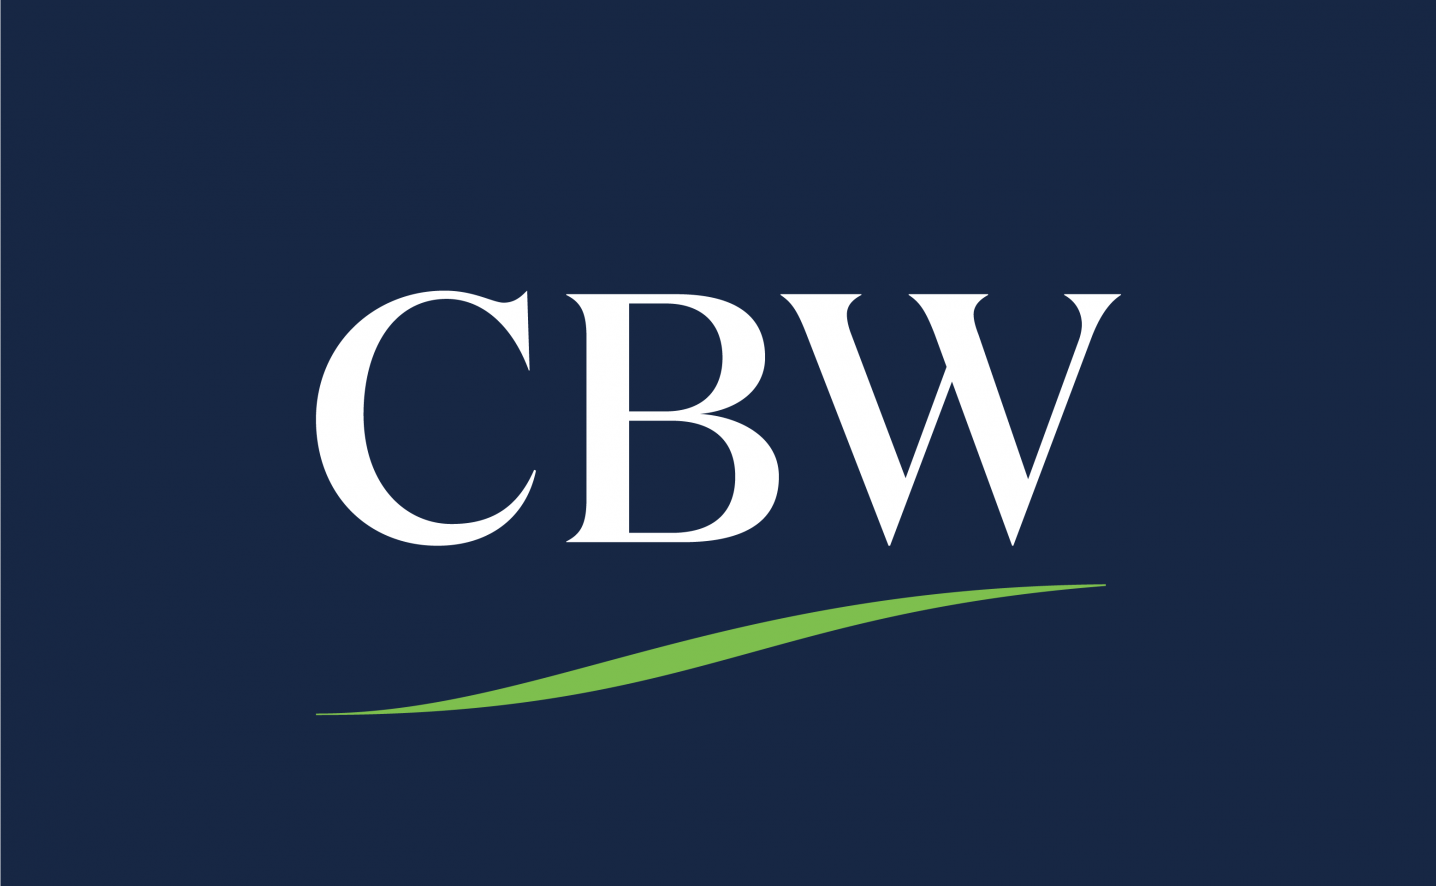 CBW logo design